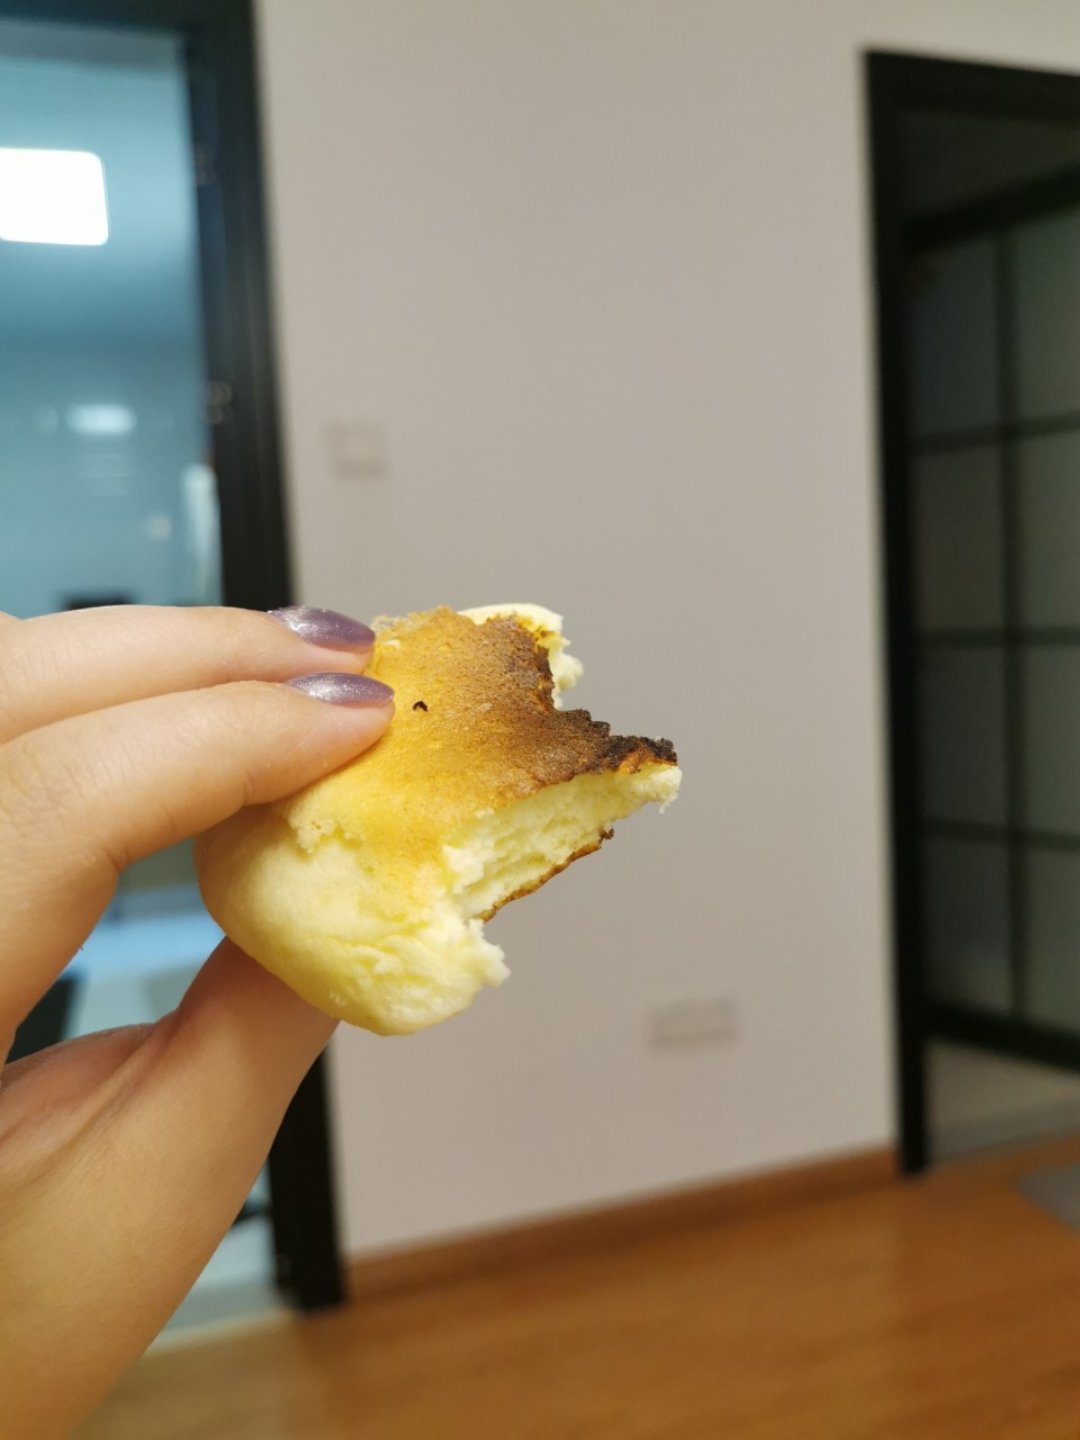 原味无油日式舒芙蕾厚松饼